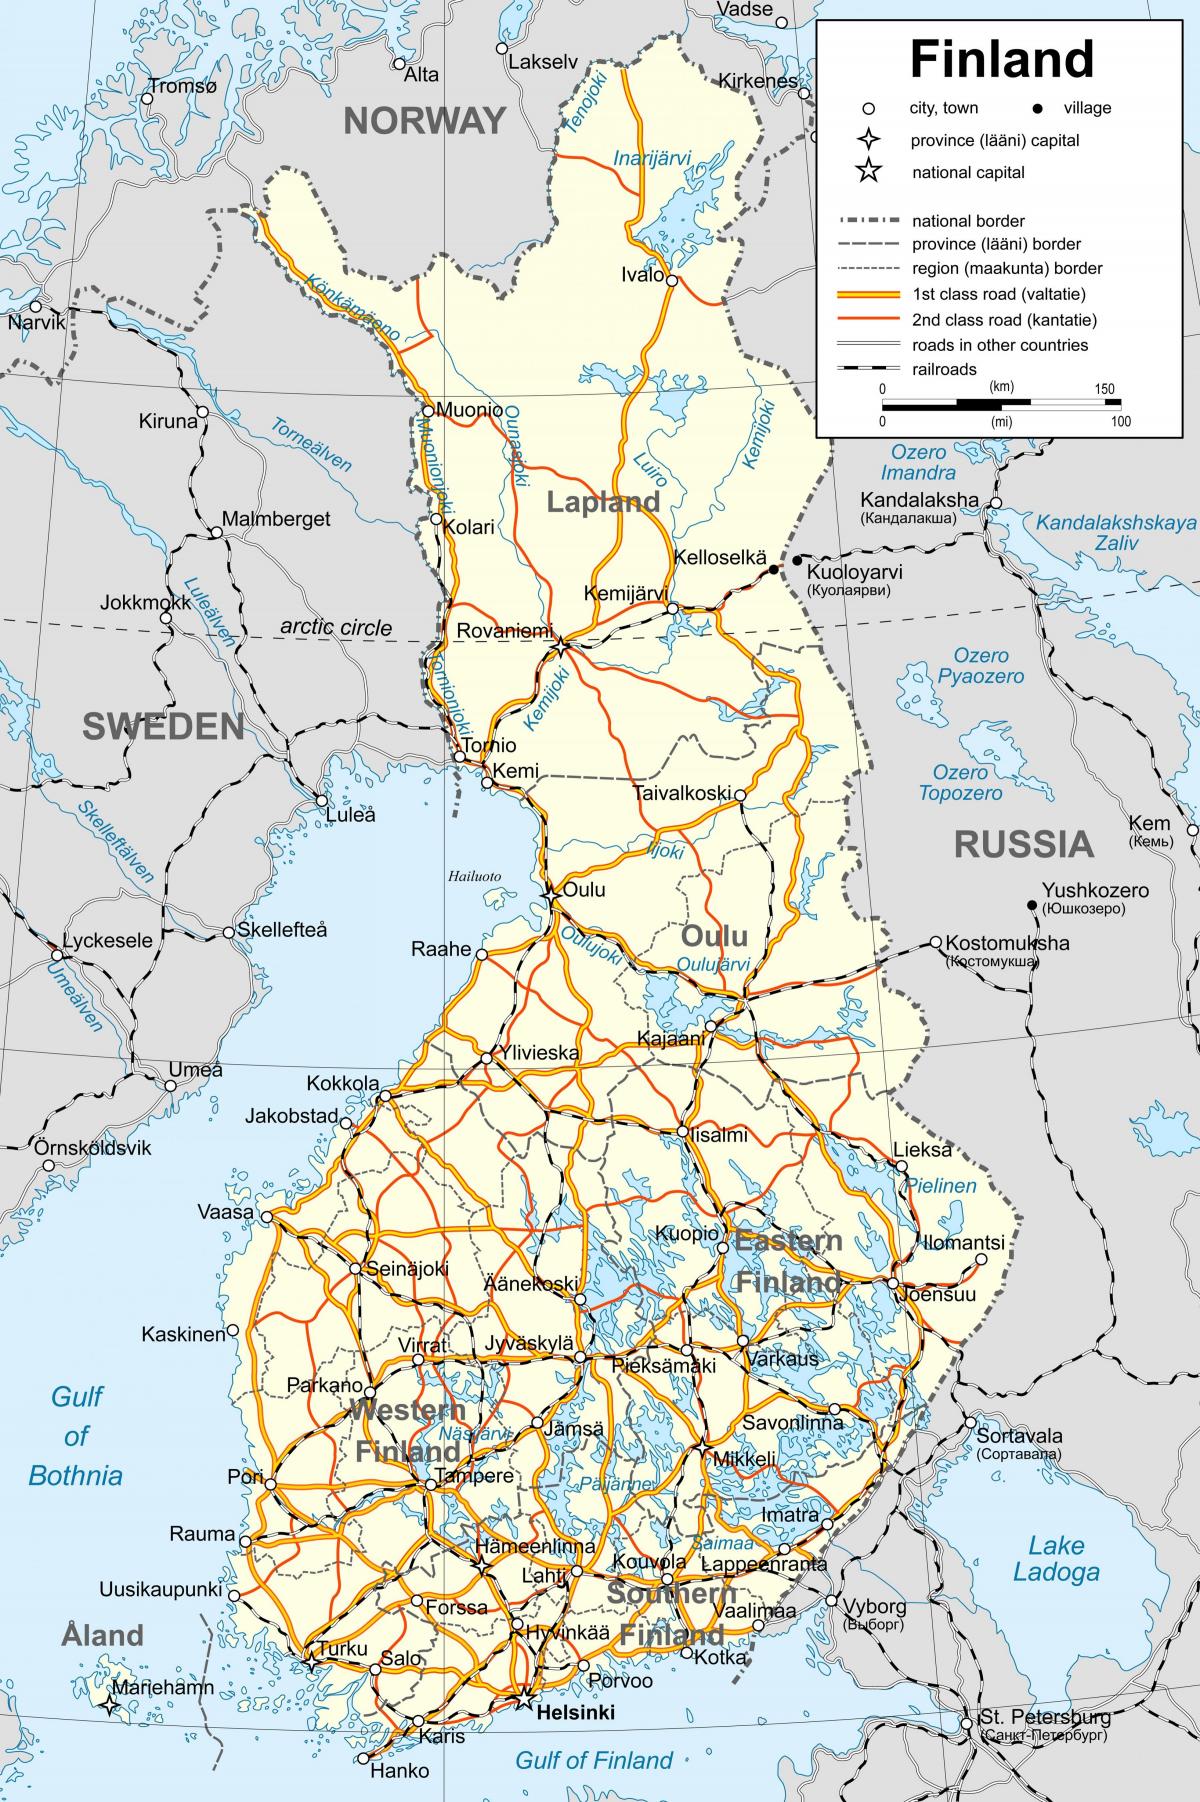 แผนที่ของฟินแลนด์ทางการเมือง